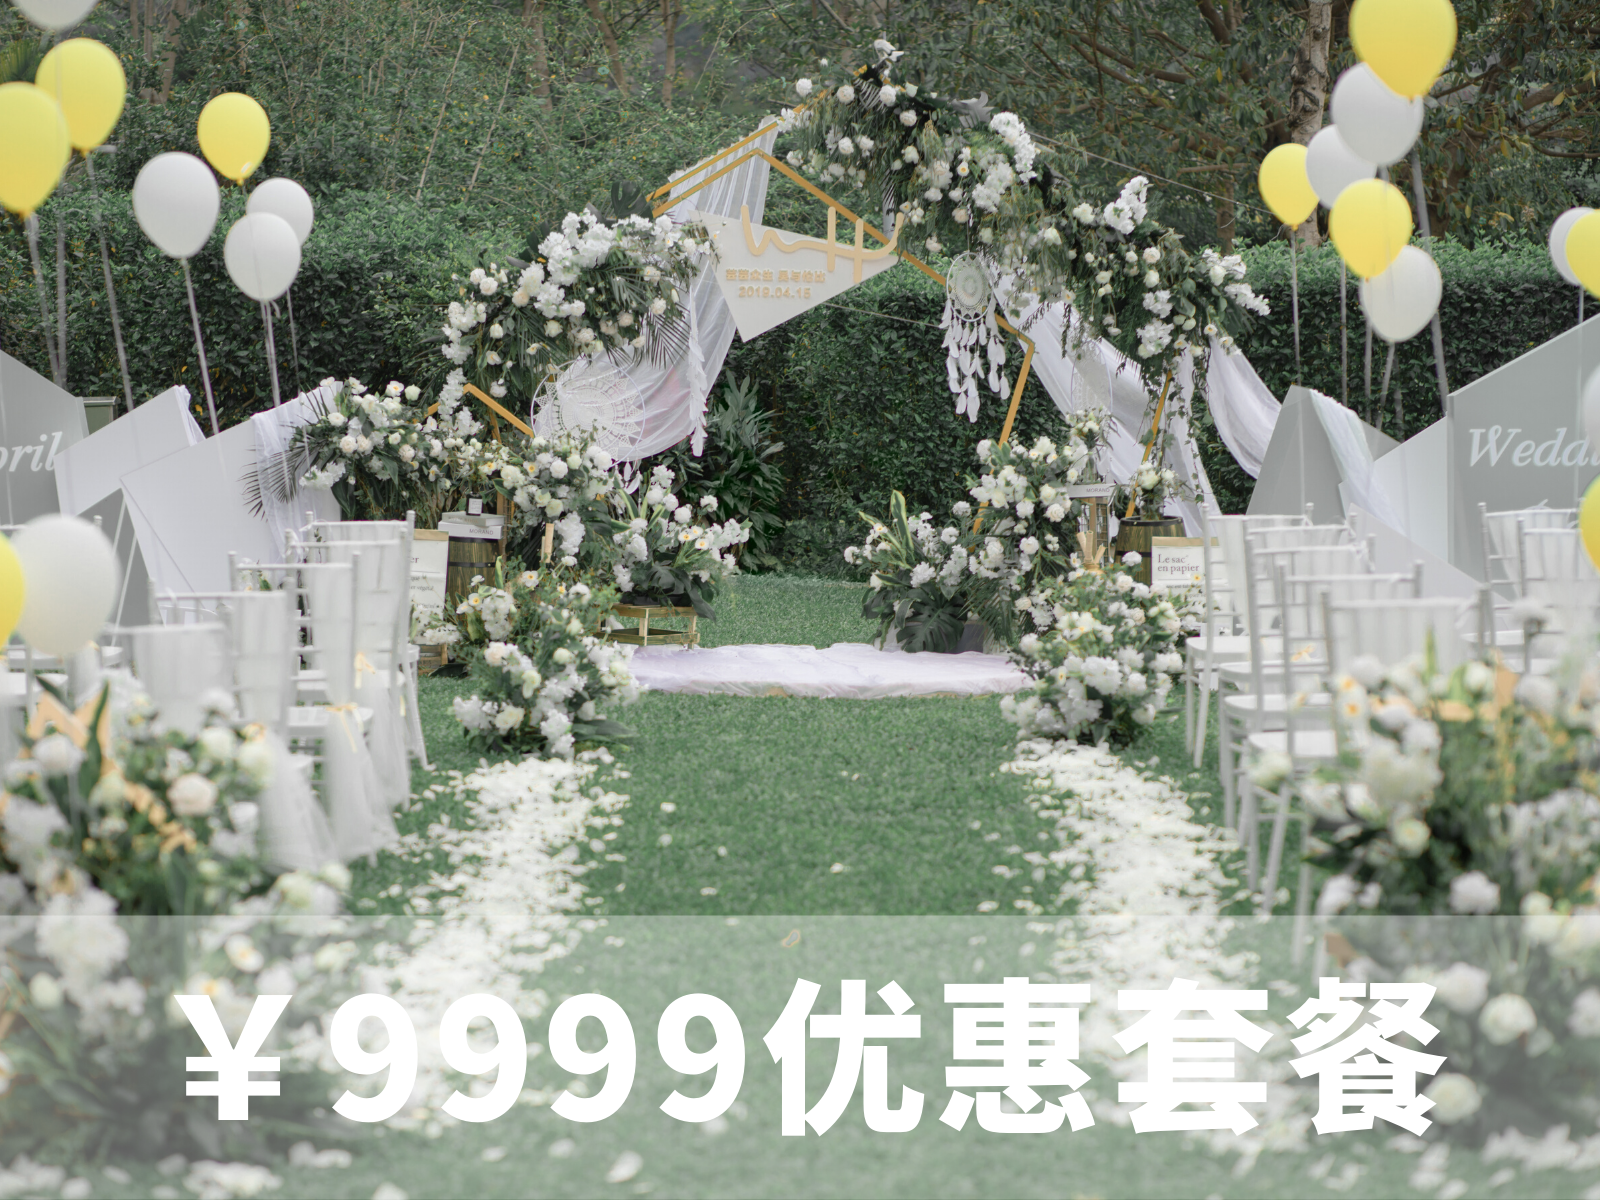 9999元优惠套系【白绿·户外婚礼】